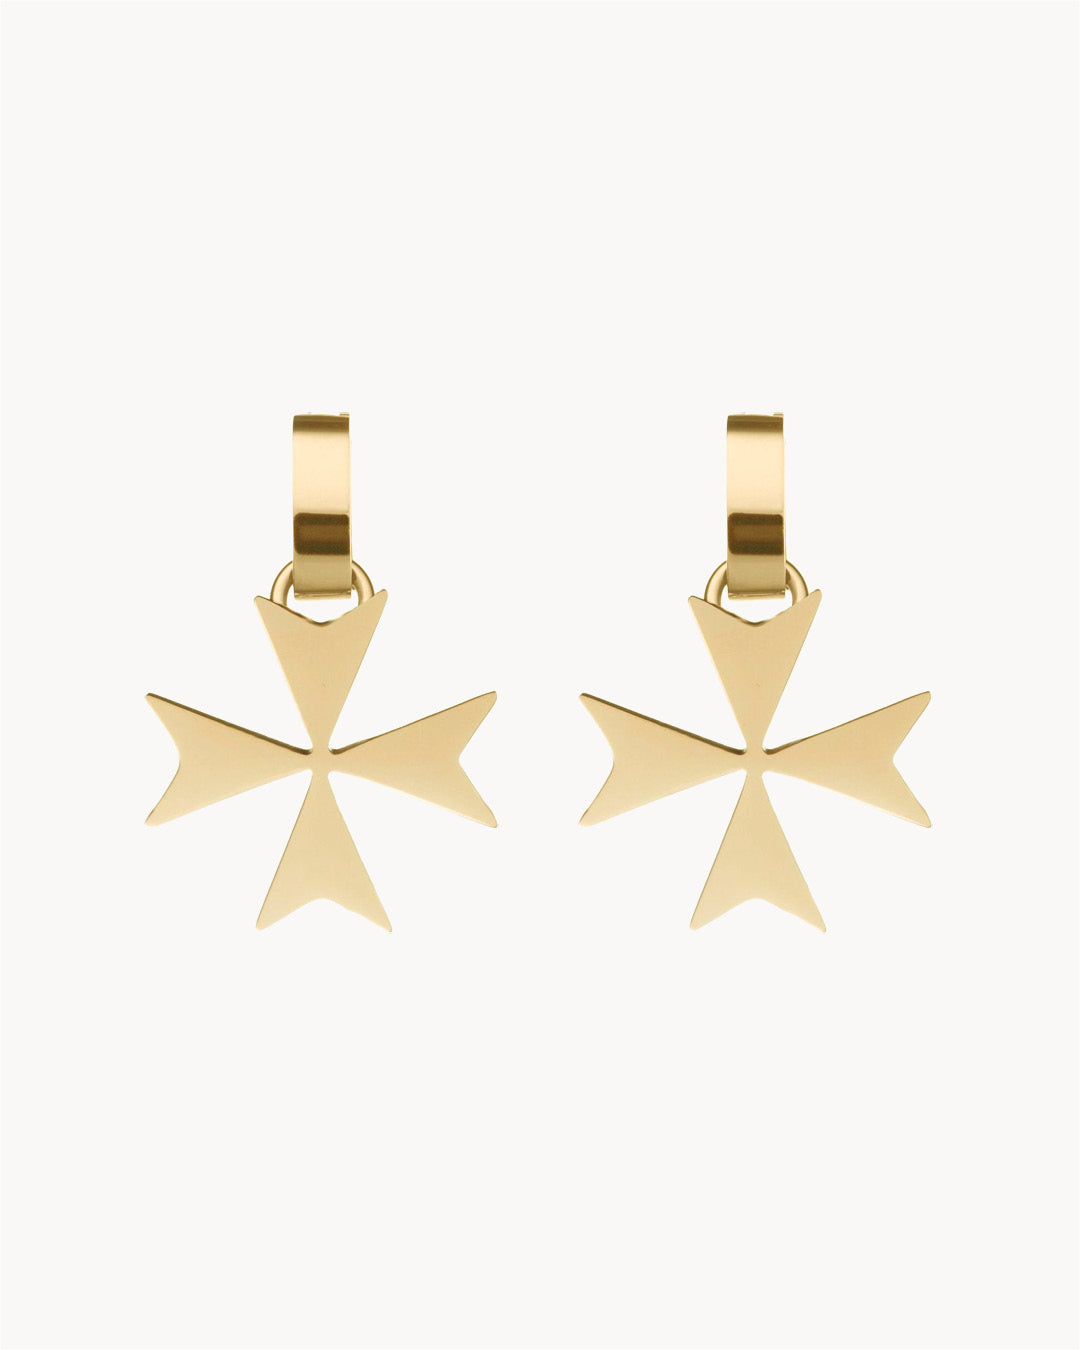 Maltese Cross Earring Pendants, Gold